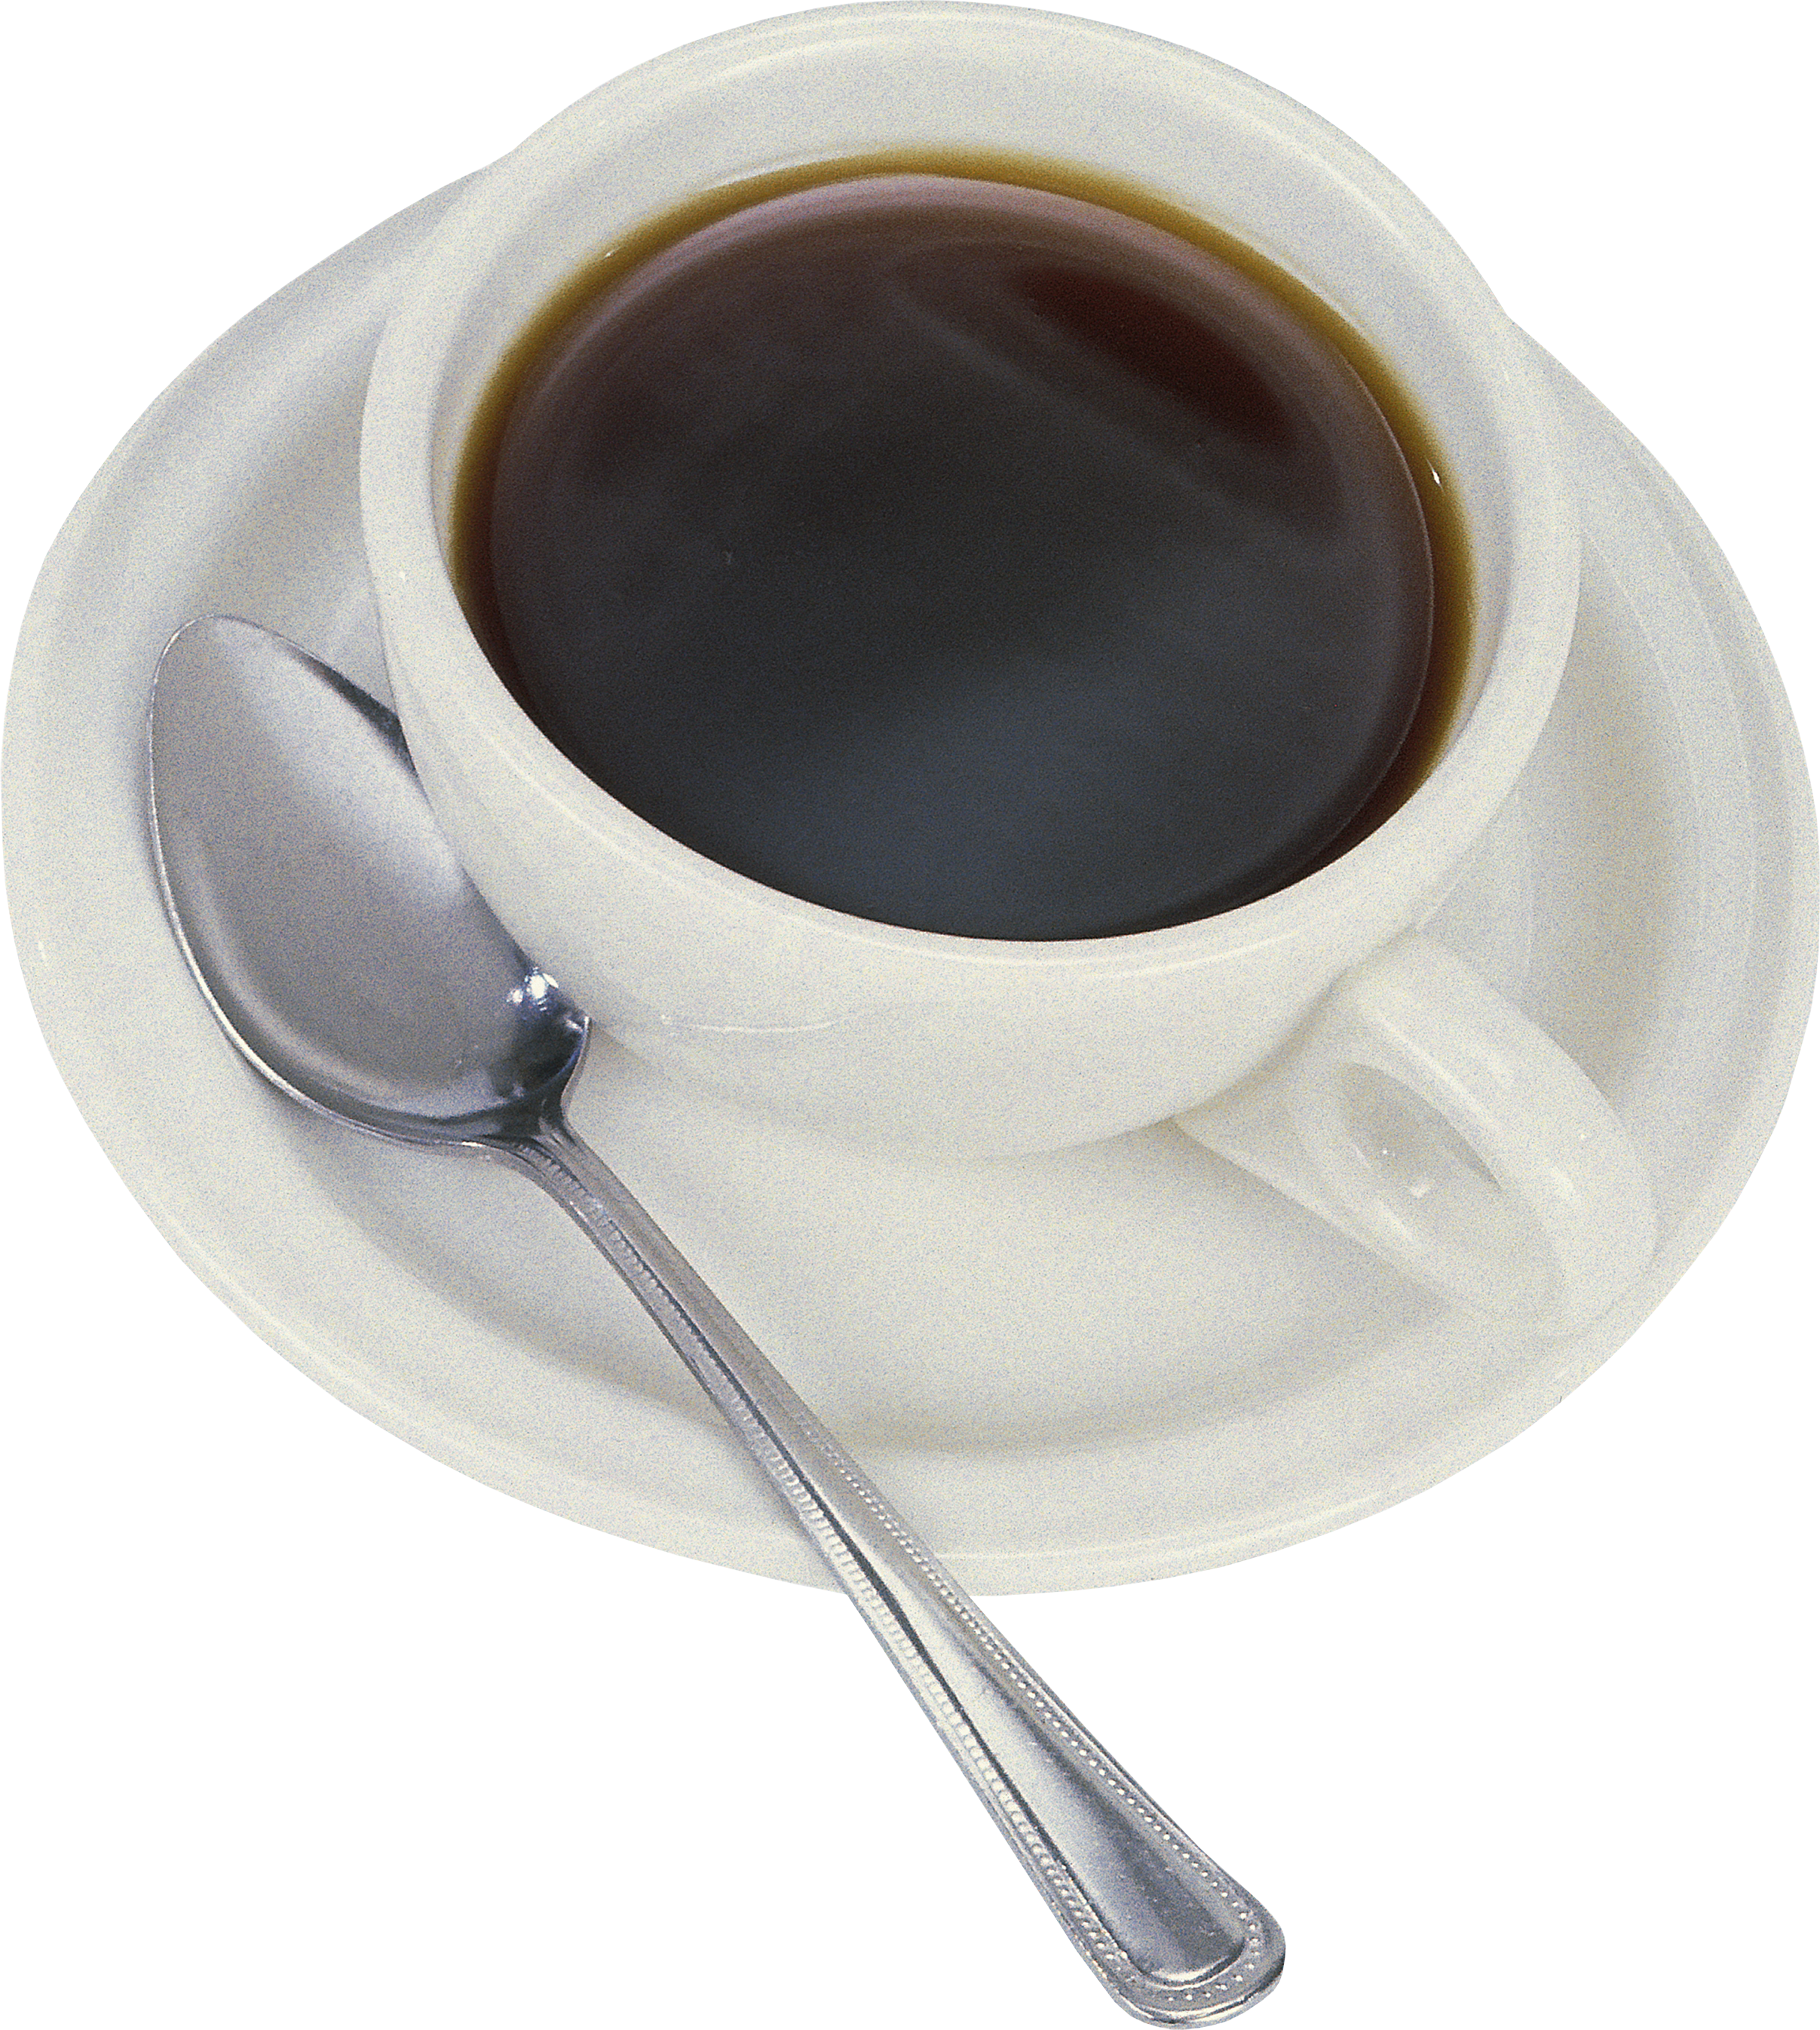 Cup, Mug Coffee